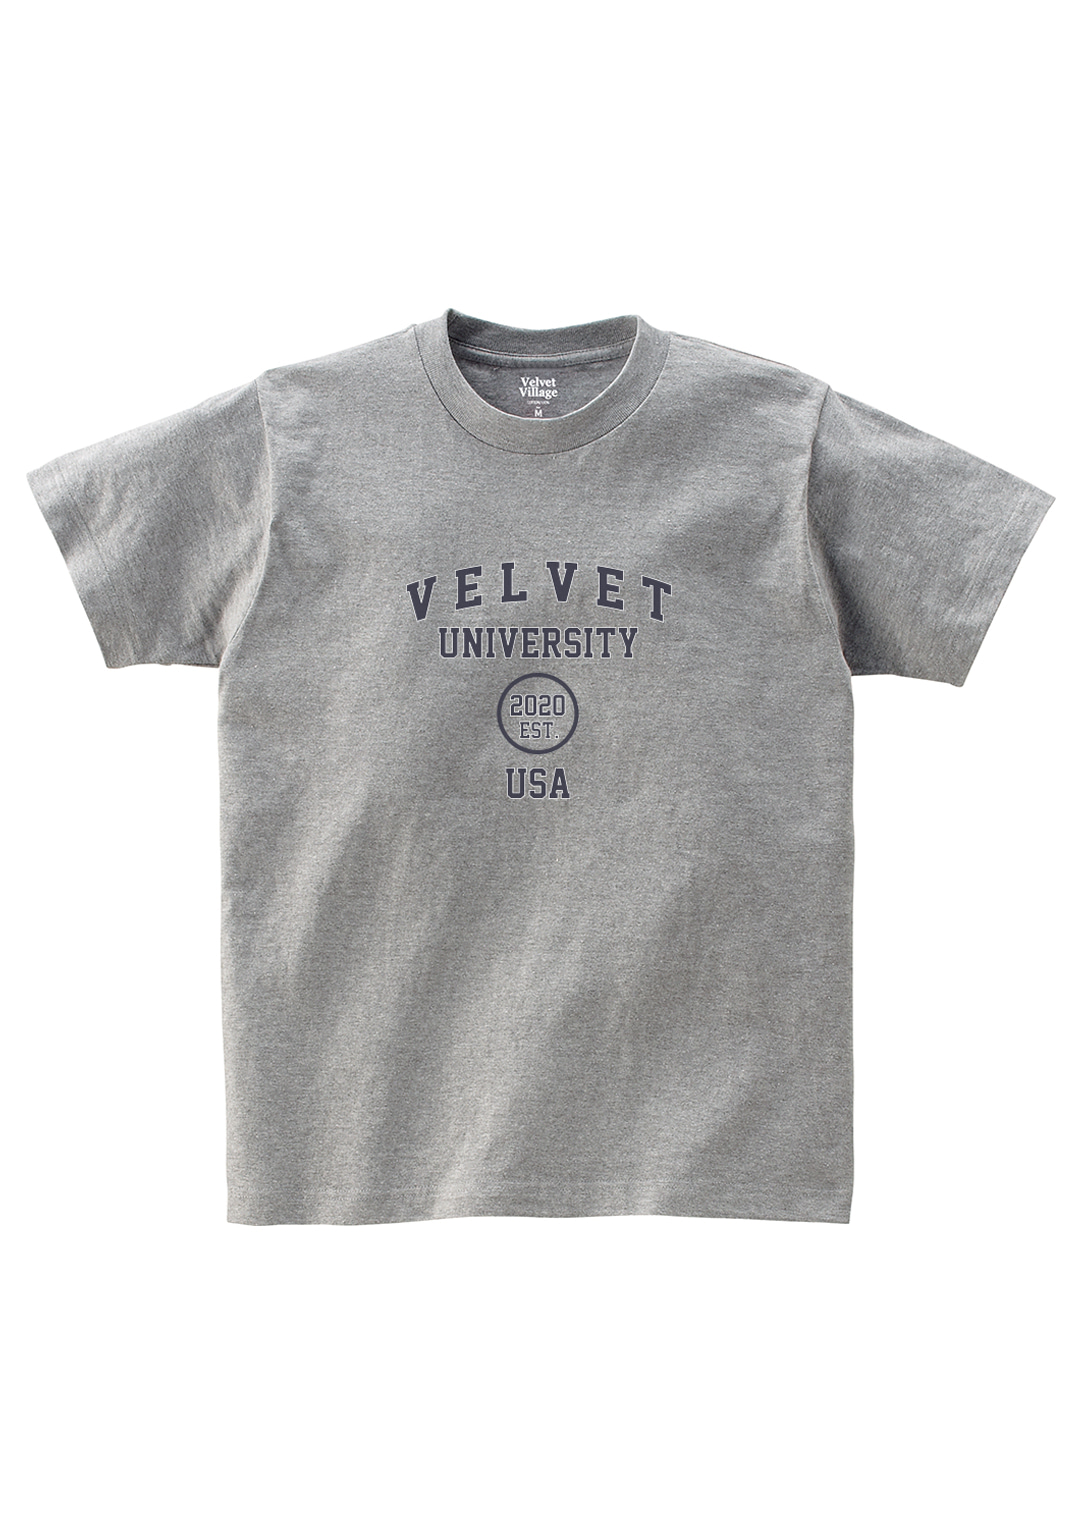 Velvet University T-shirt (Grey)